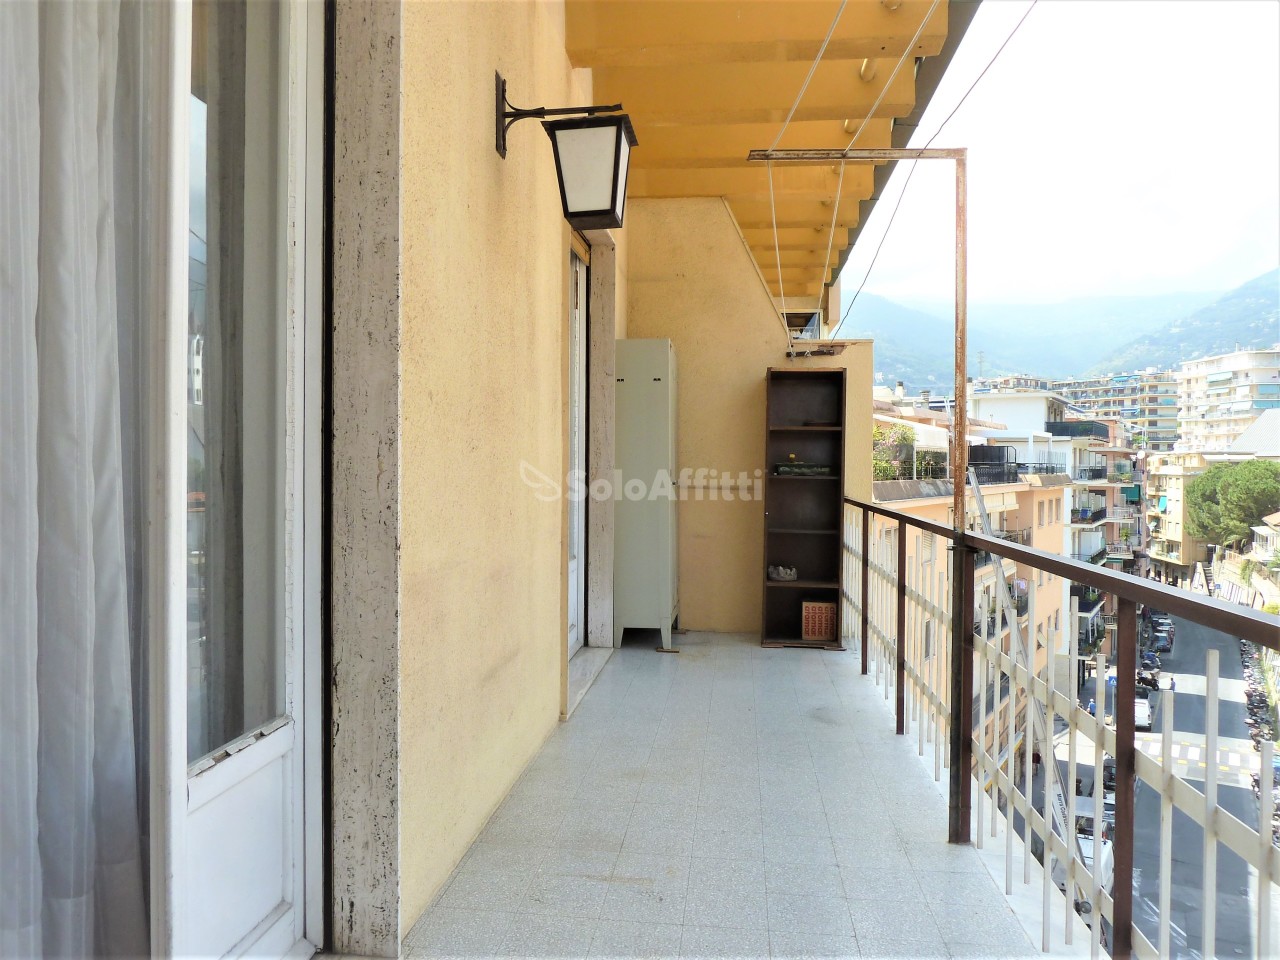 Appartamento in affitto a SanRemo, 3 locali, prezzo € 525 | PortaleAgenzieImmobiliari.it